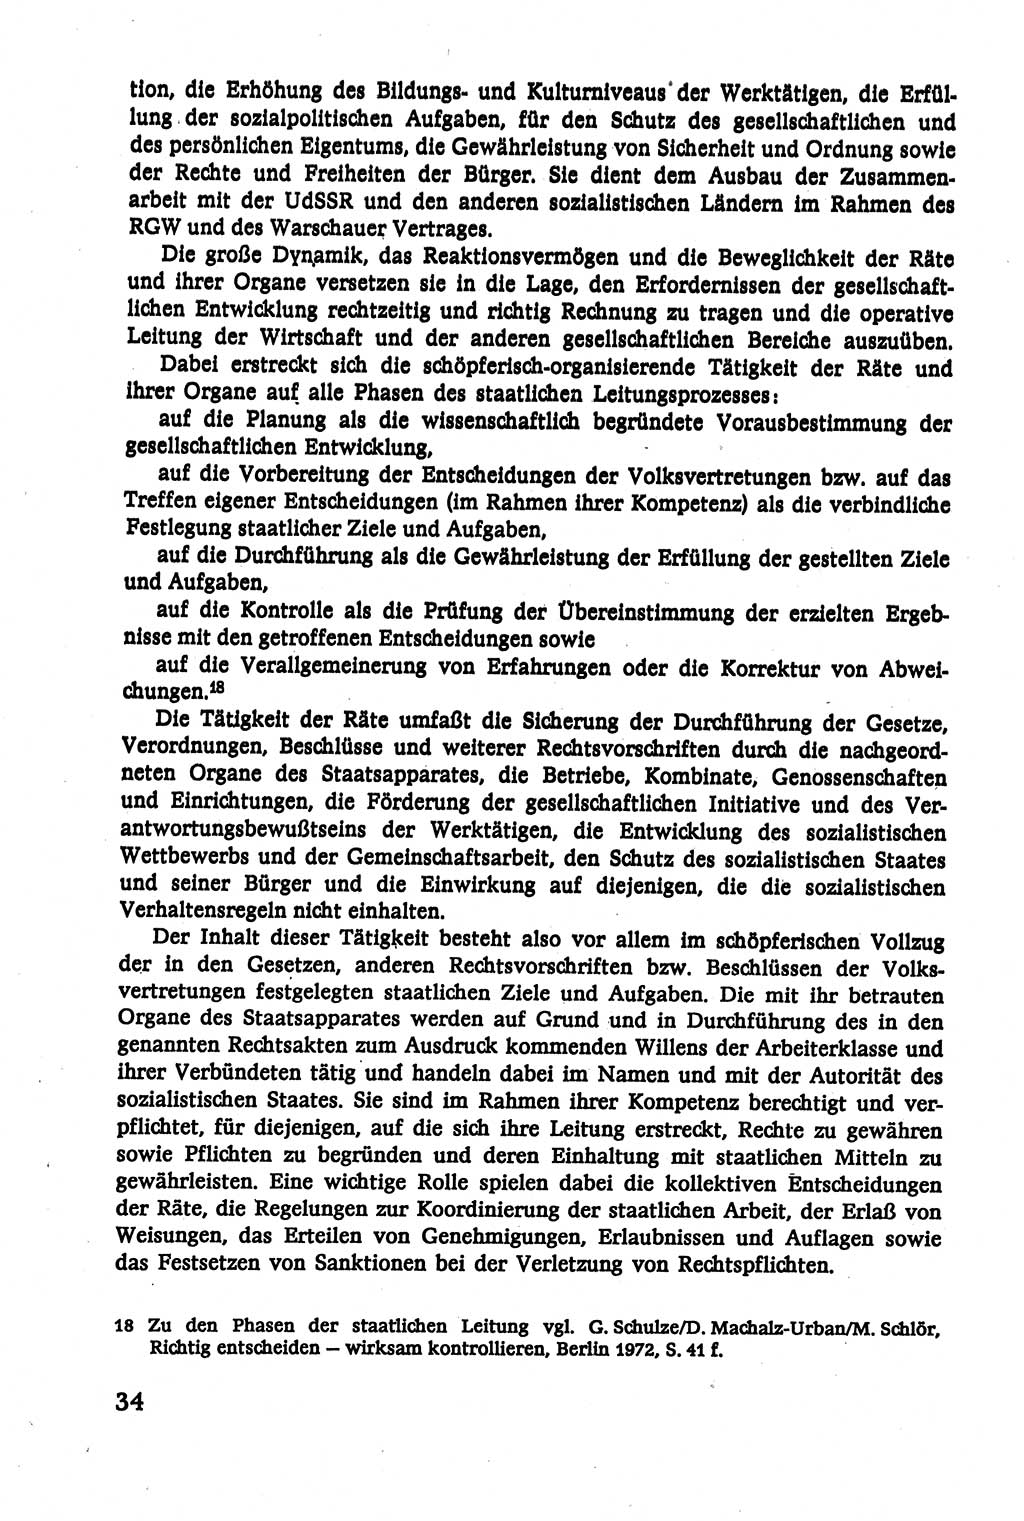 Verwaltungsrecht [Deutsche Demokratische Republik (DDR)], Lehrbuch 1979, Seite 34 (Verw.-R. DDR Lb. 1979, S. 34)